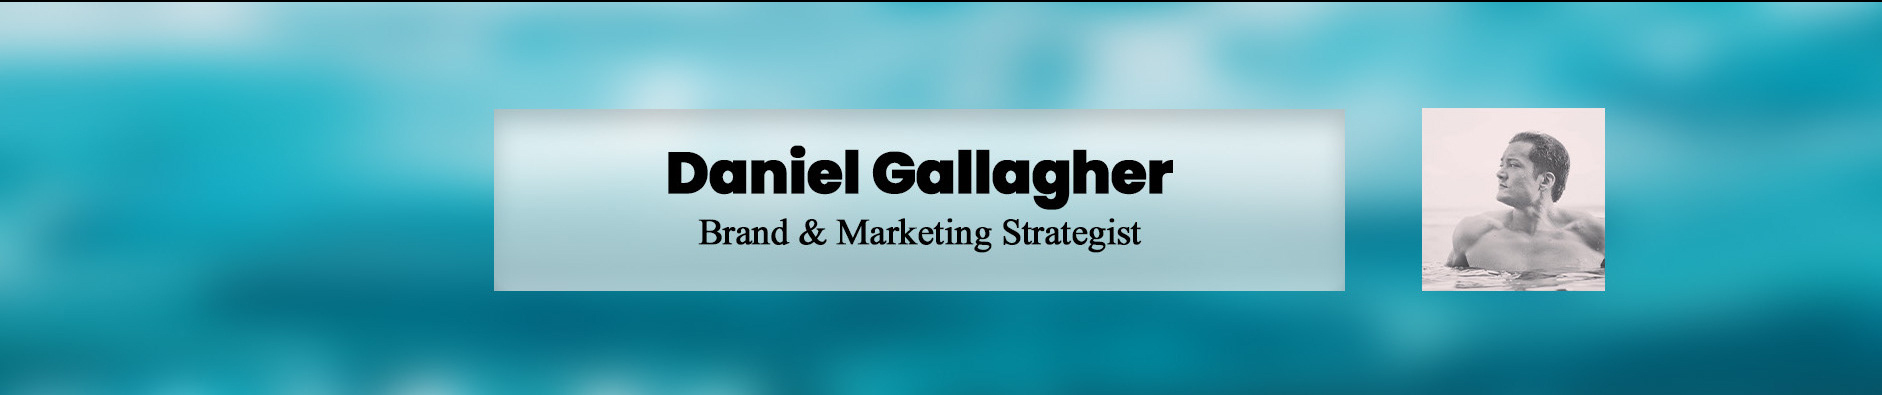 Daniel Gallagher's profile banner